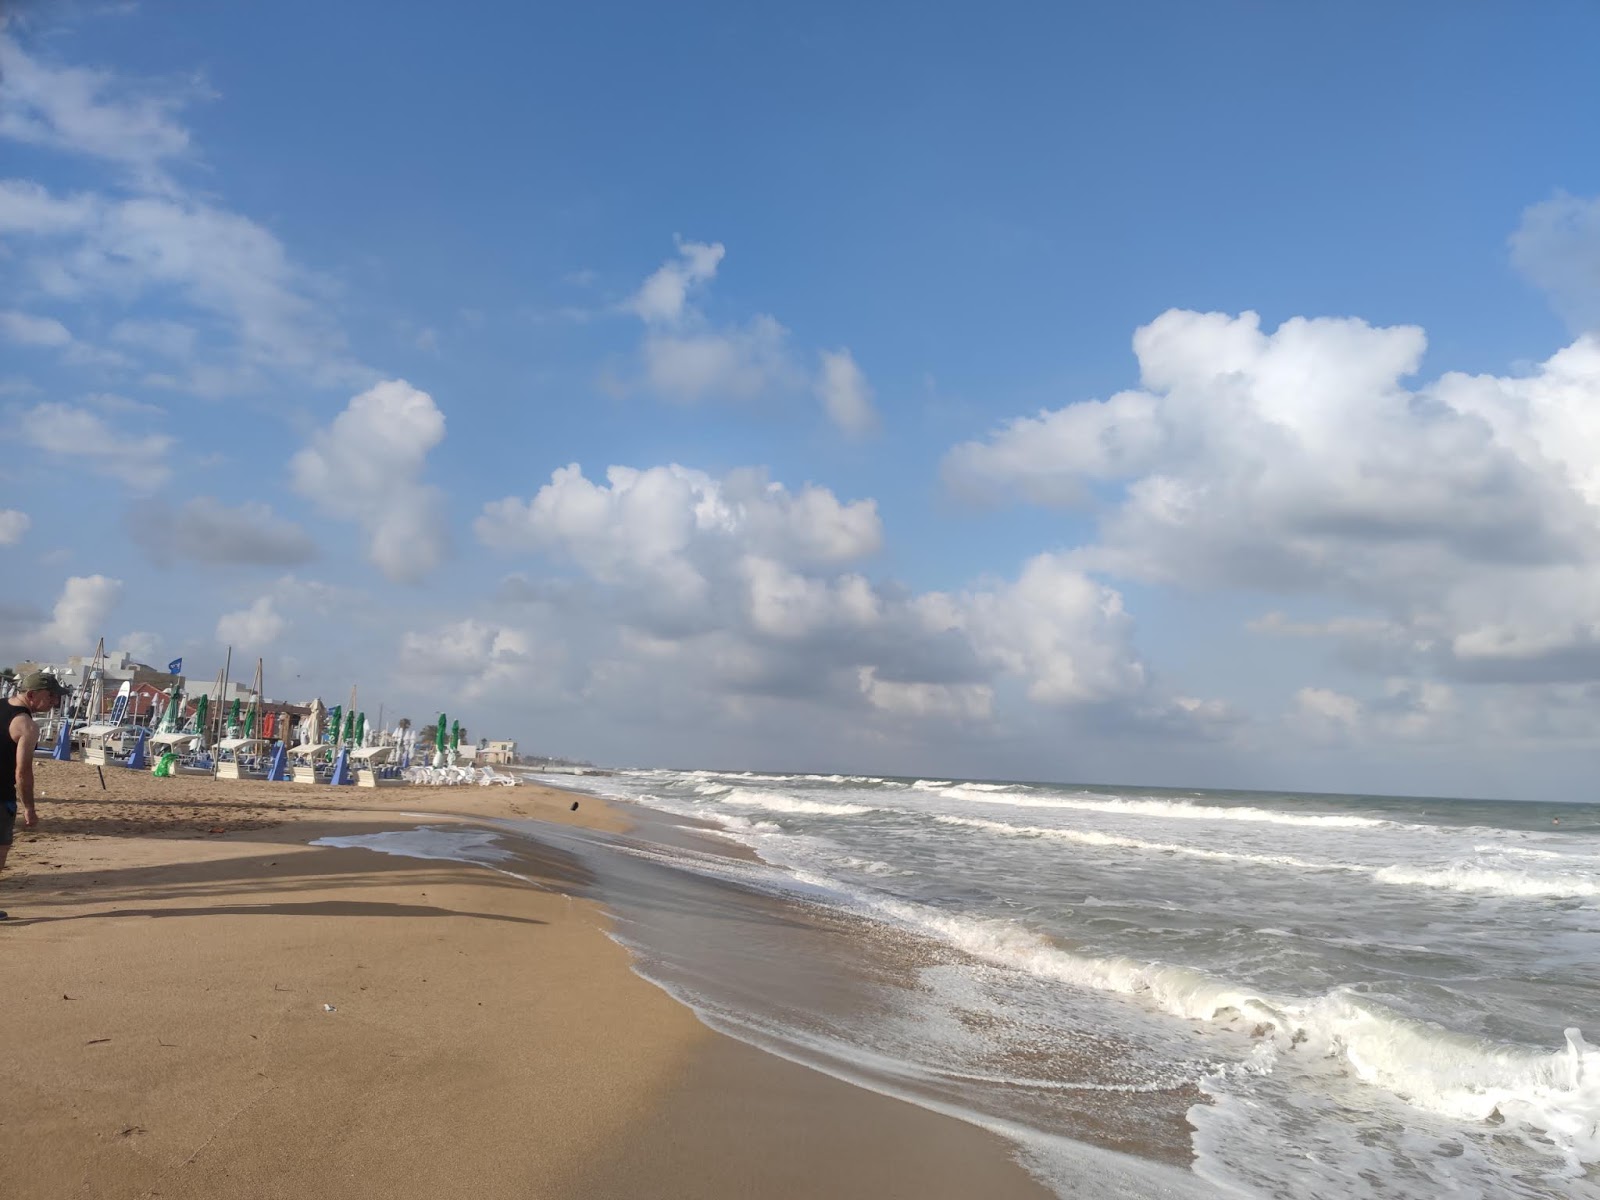 Sokolov beach'in fotoğrafı geniş plaj ile birlikte